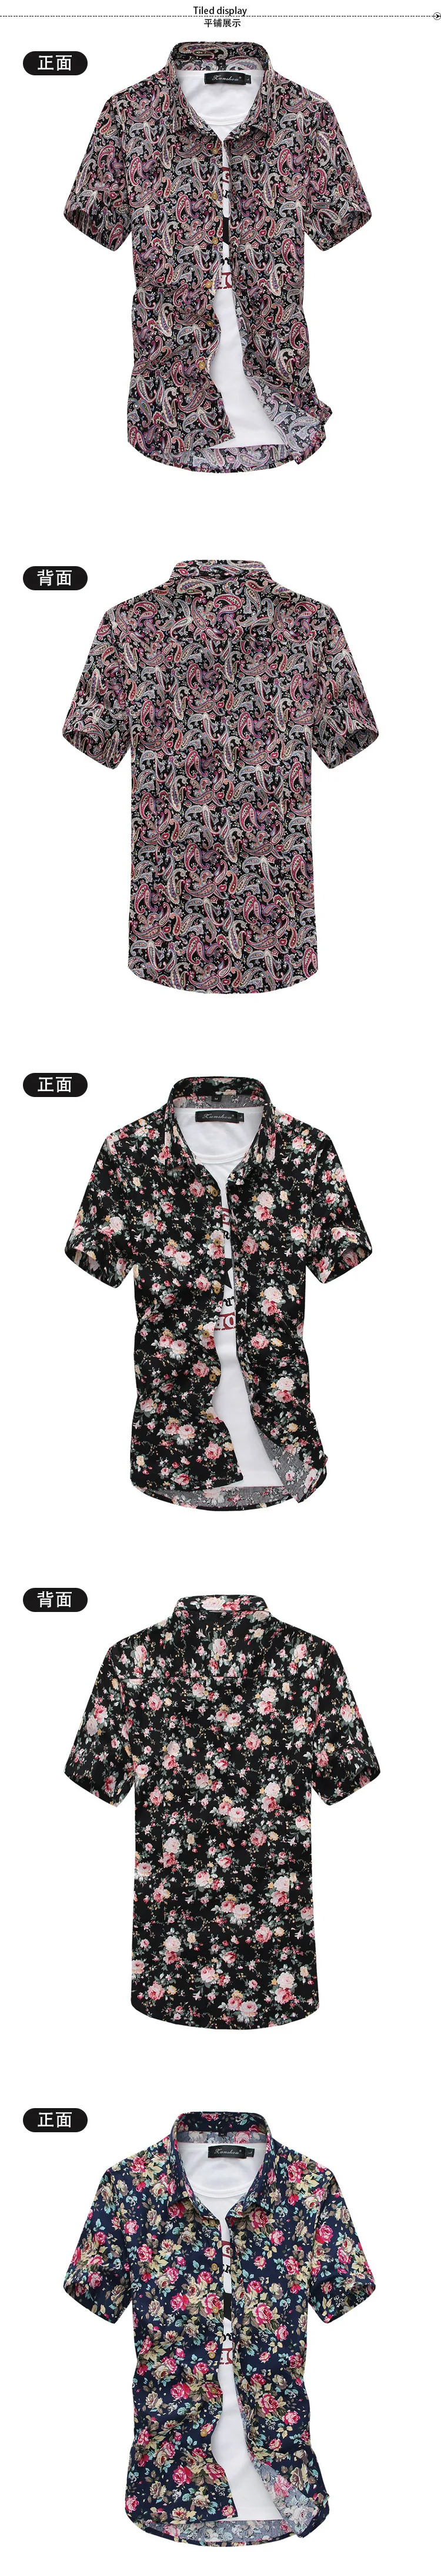 2019 г. летняя модная новая Для Мужчин's Повседневное короткий рукав платье рубашка цветочные Блузки/человека Цветочный принт пляжные